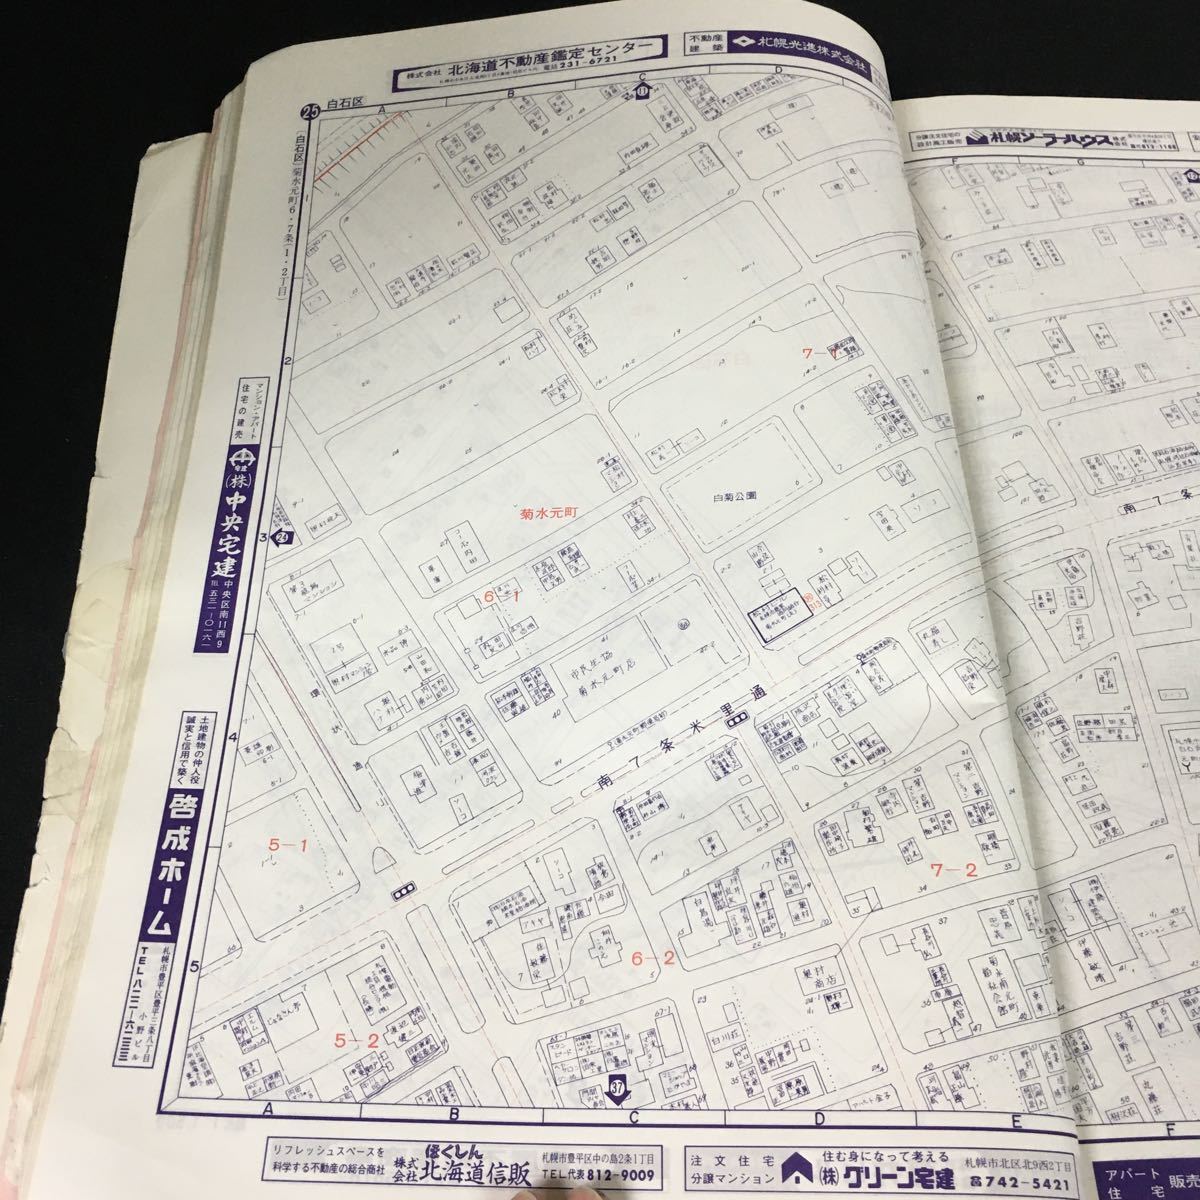 d-415ゼンリンの住宅地図 札幌市白石区 日本住宅地図出版株式会社 1983年発行※12_画像3